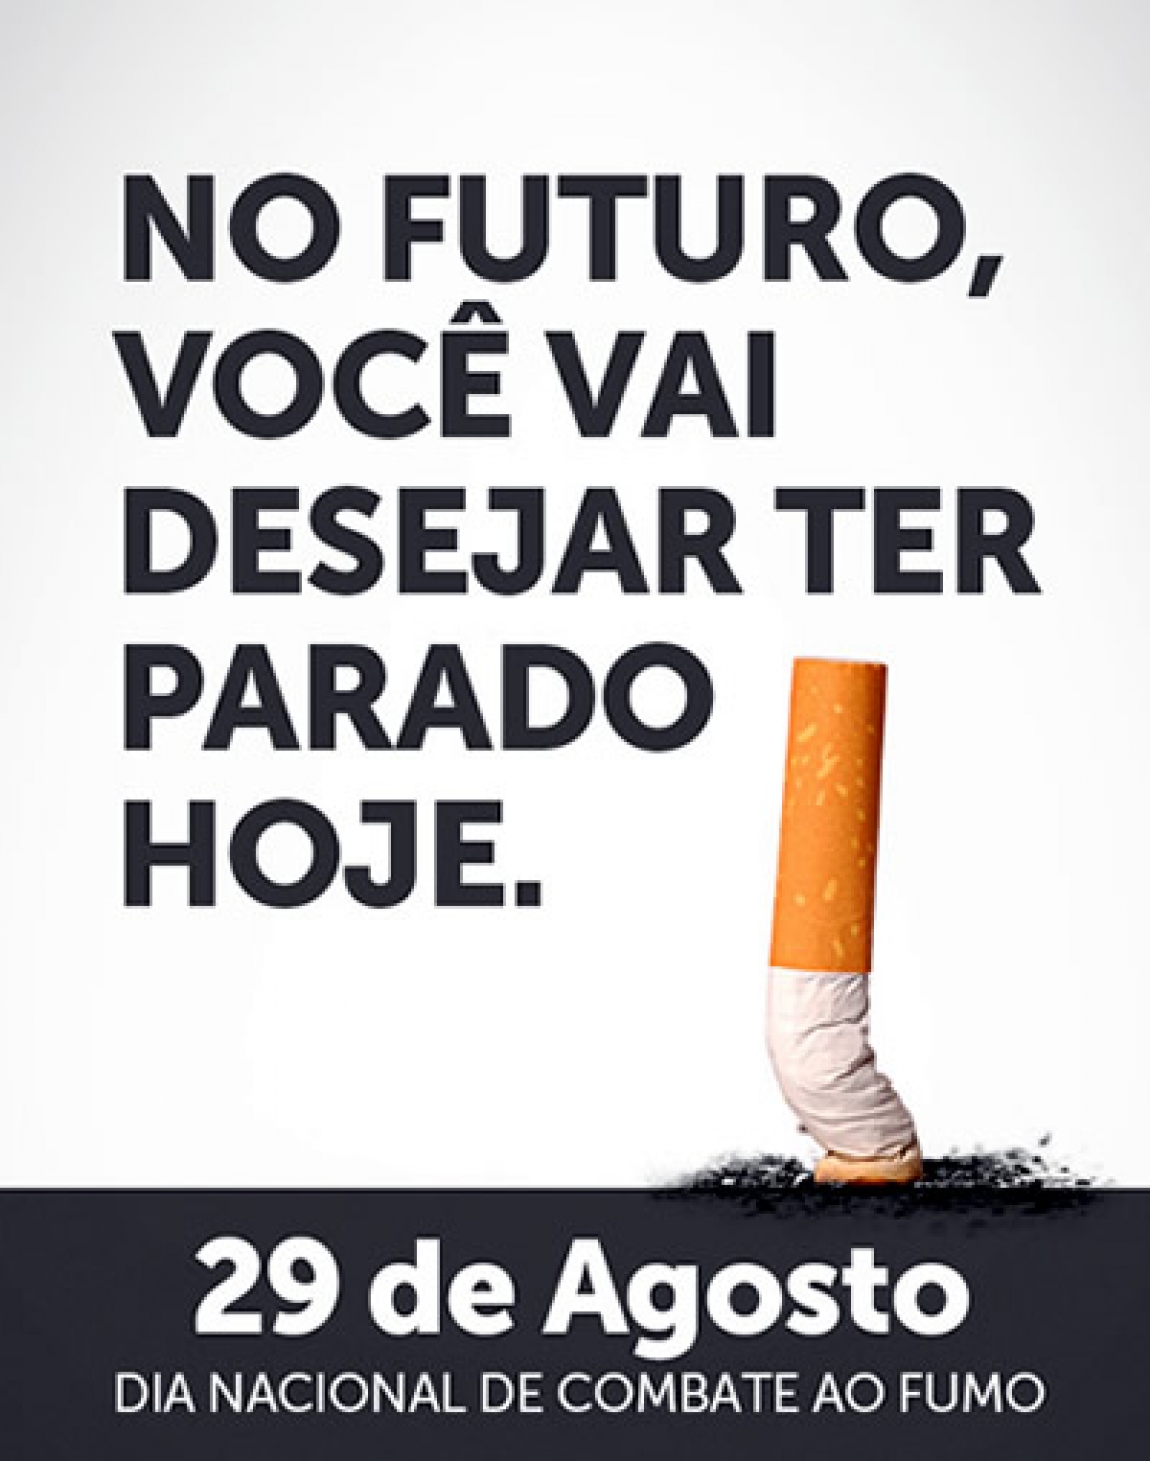  Curitiba está entre as principais capitais brasileiras com maior número de fumantes